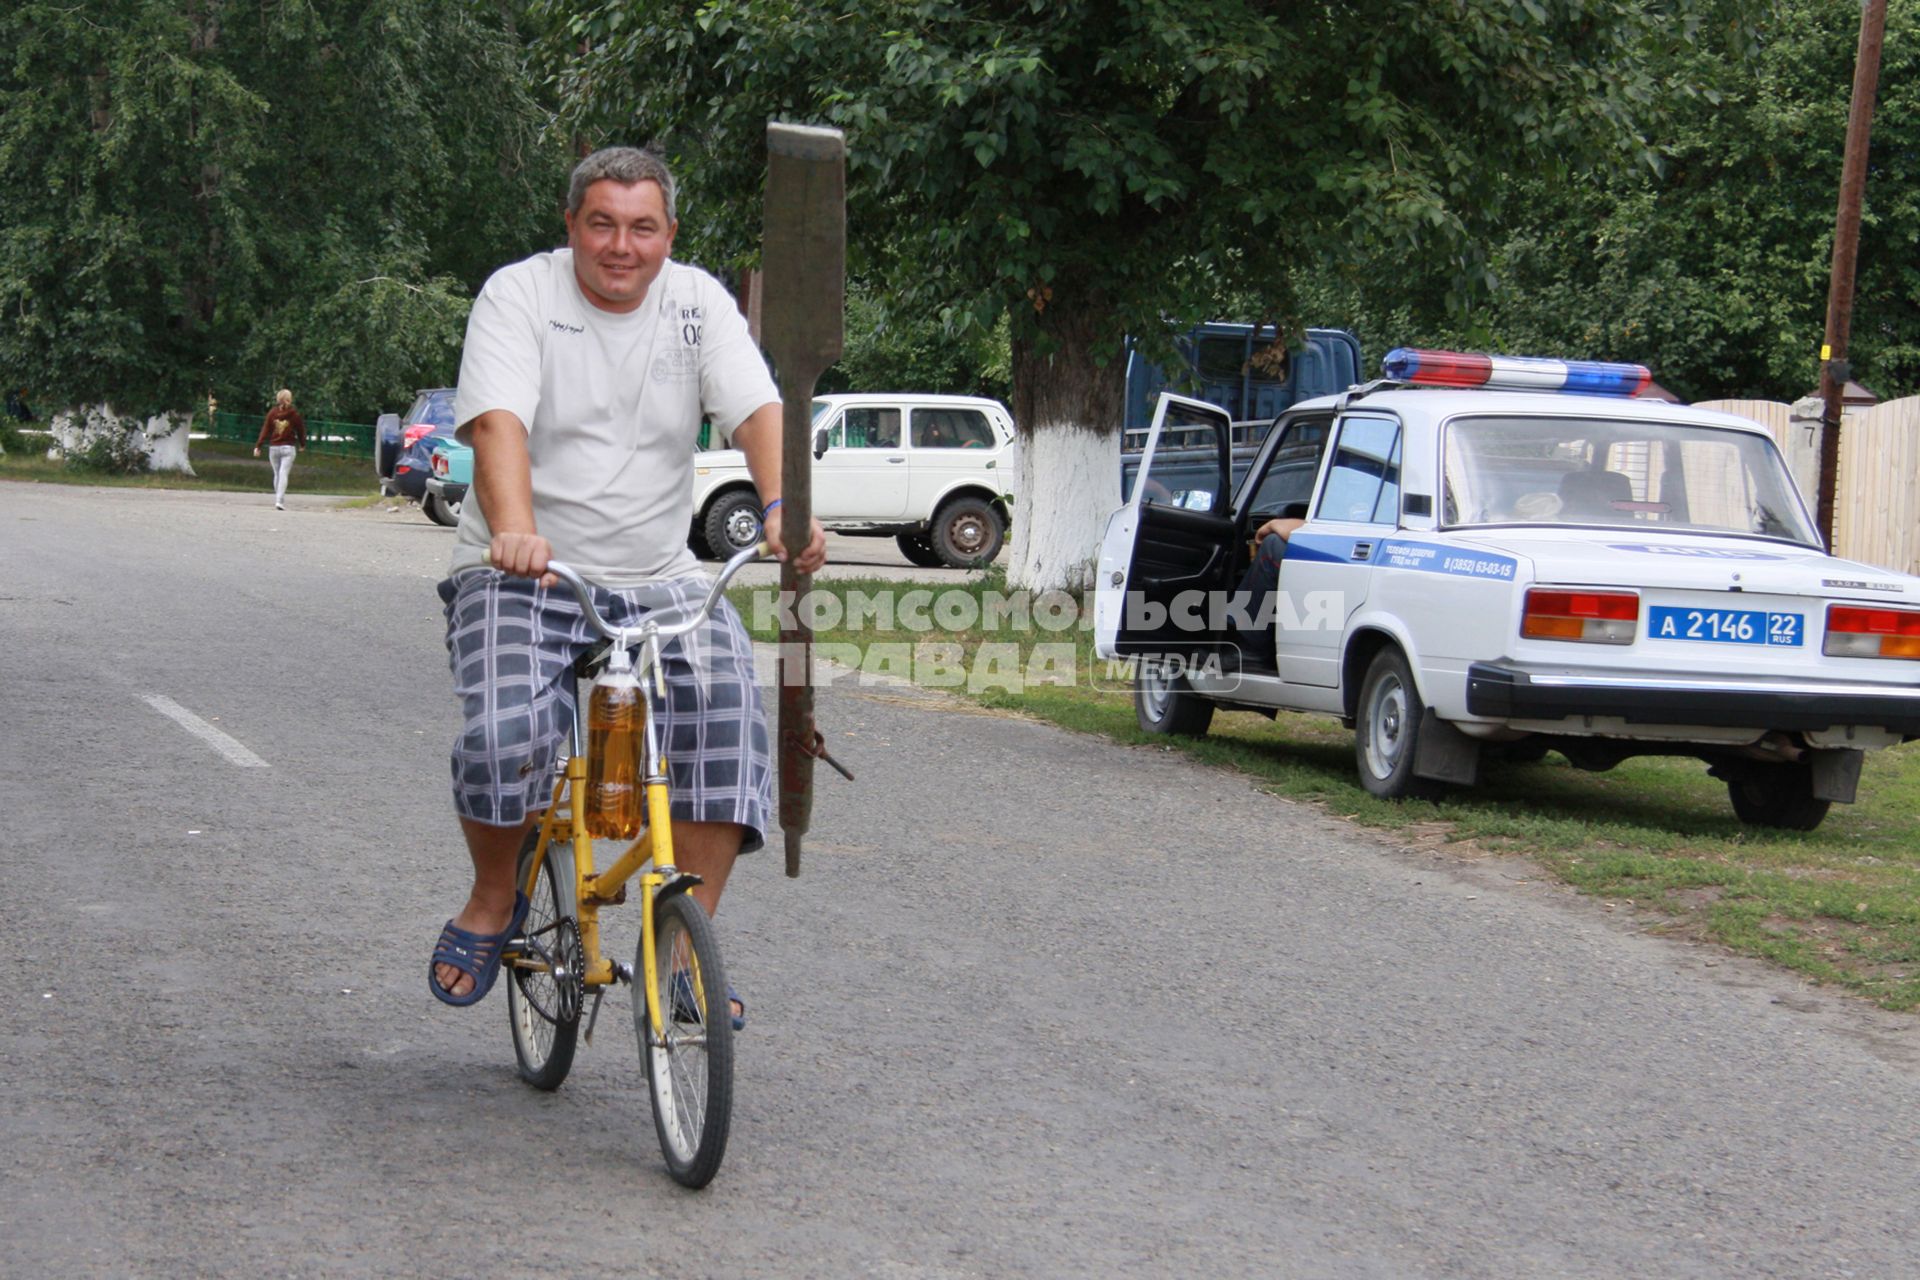 Мужчина с веслом едет на велосипеде мимо автомобиля полиции.